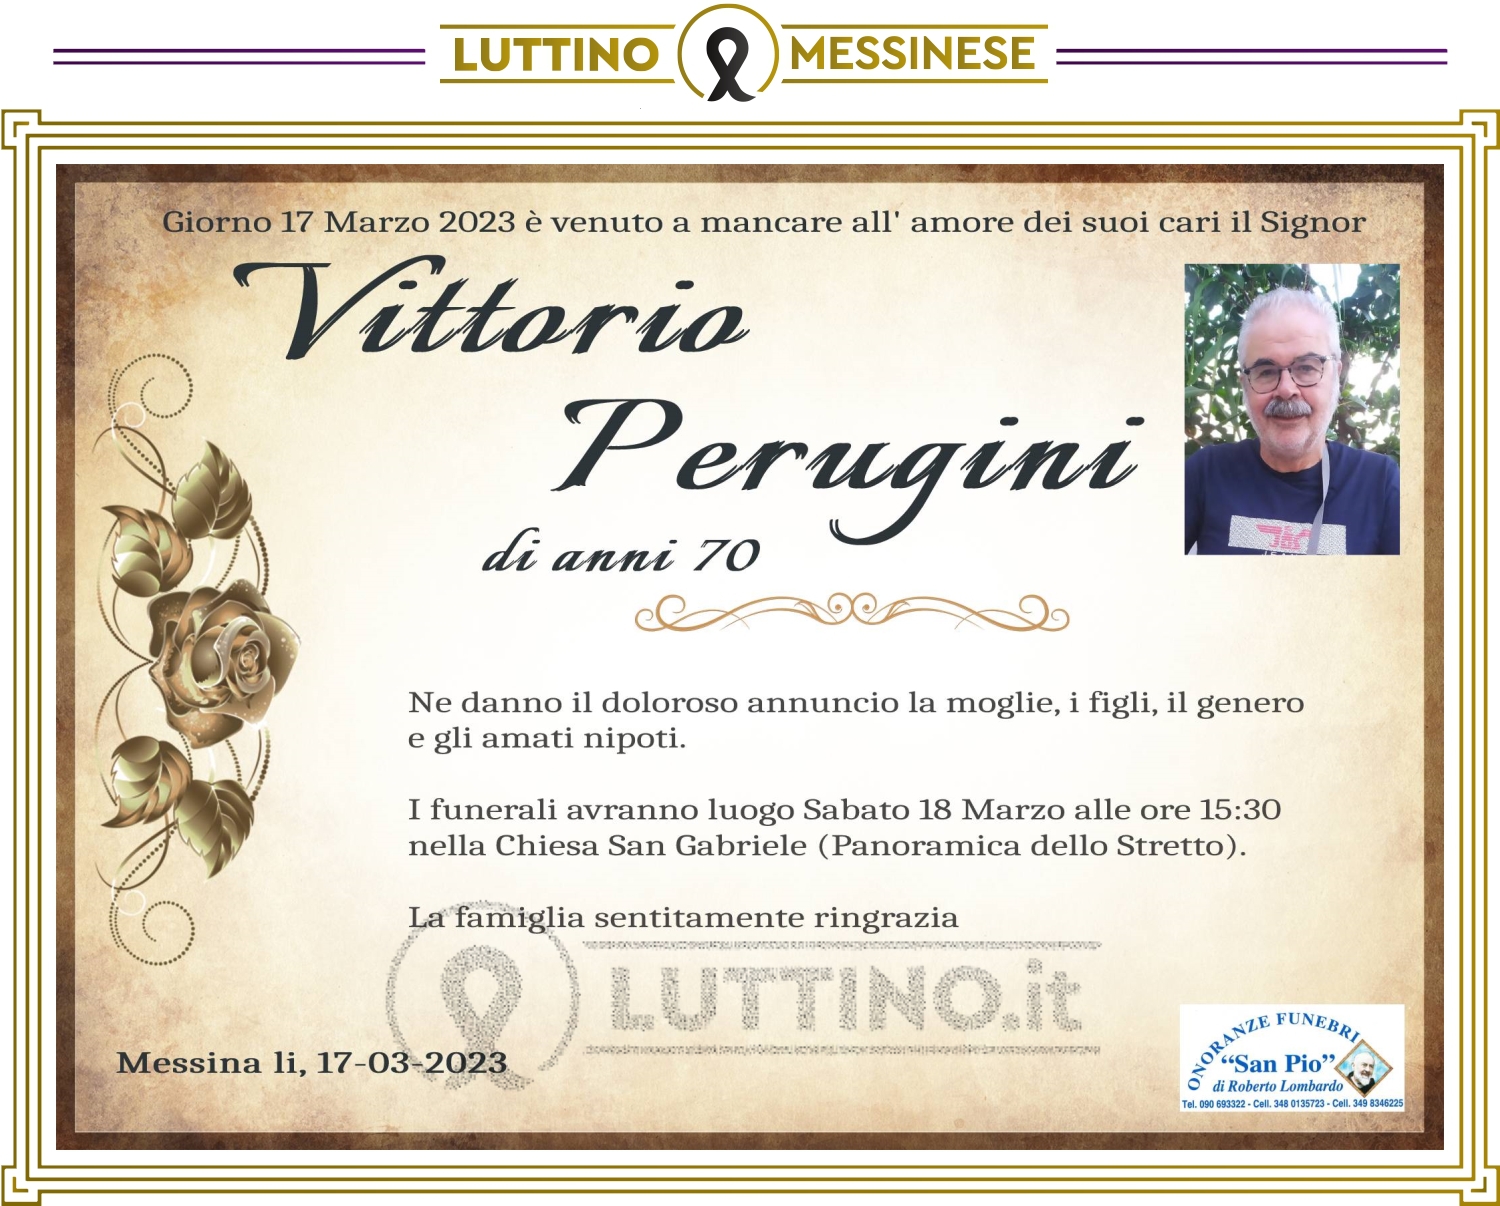 Vittorio Perugini